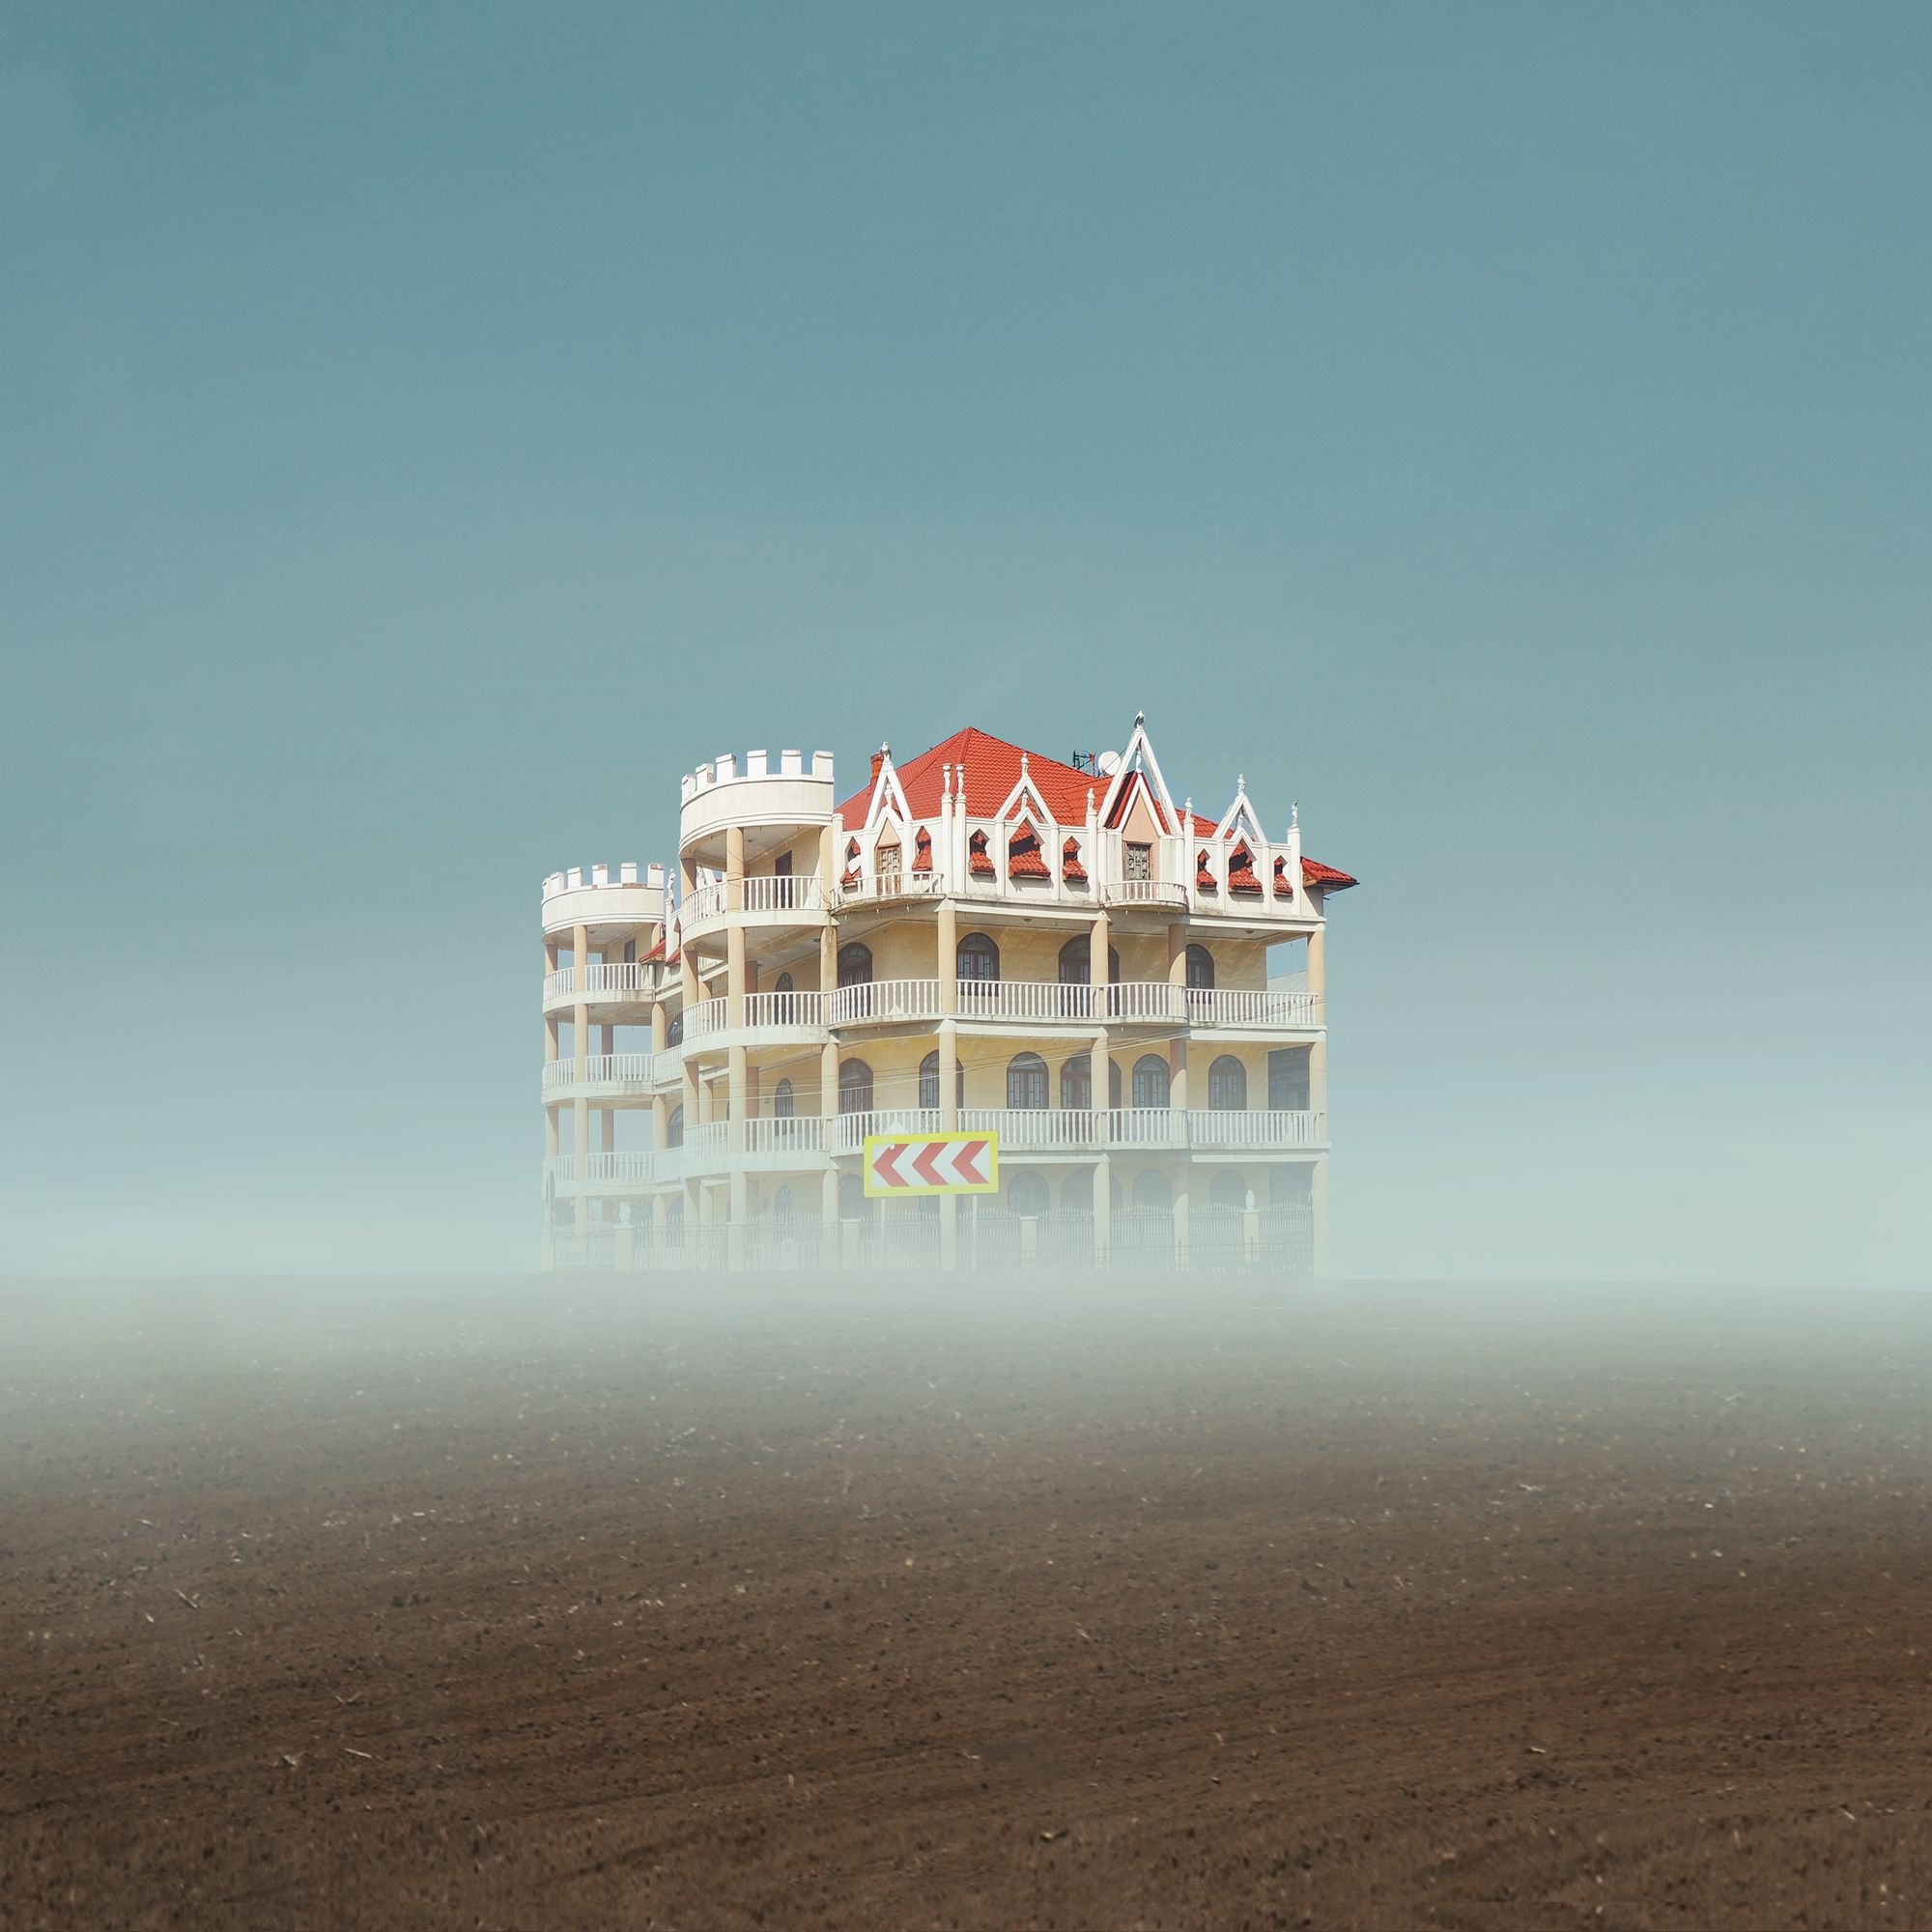 Román otthonok ködképes tájakon | Felicia Simion